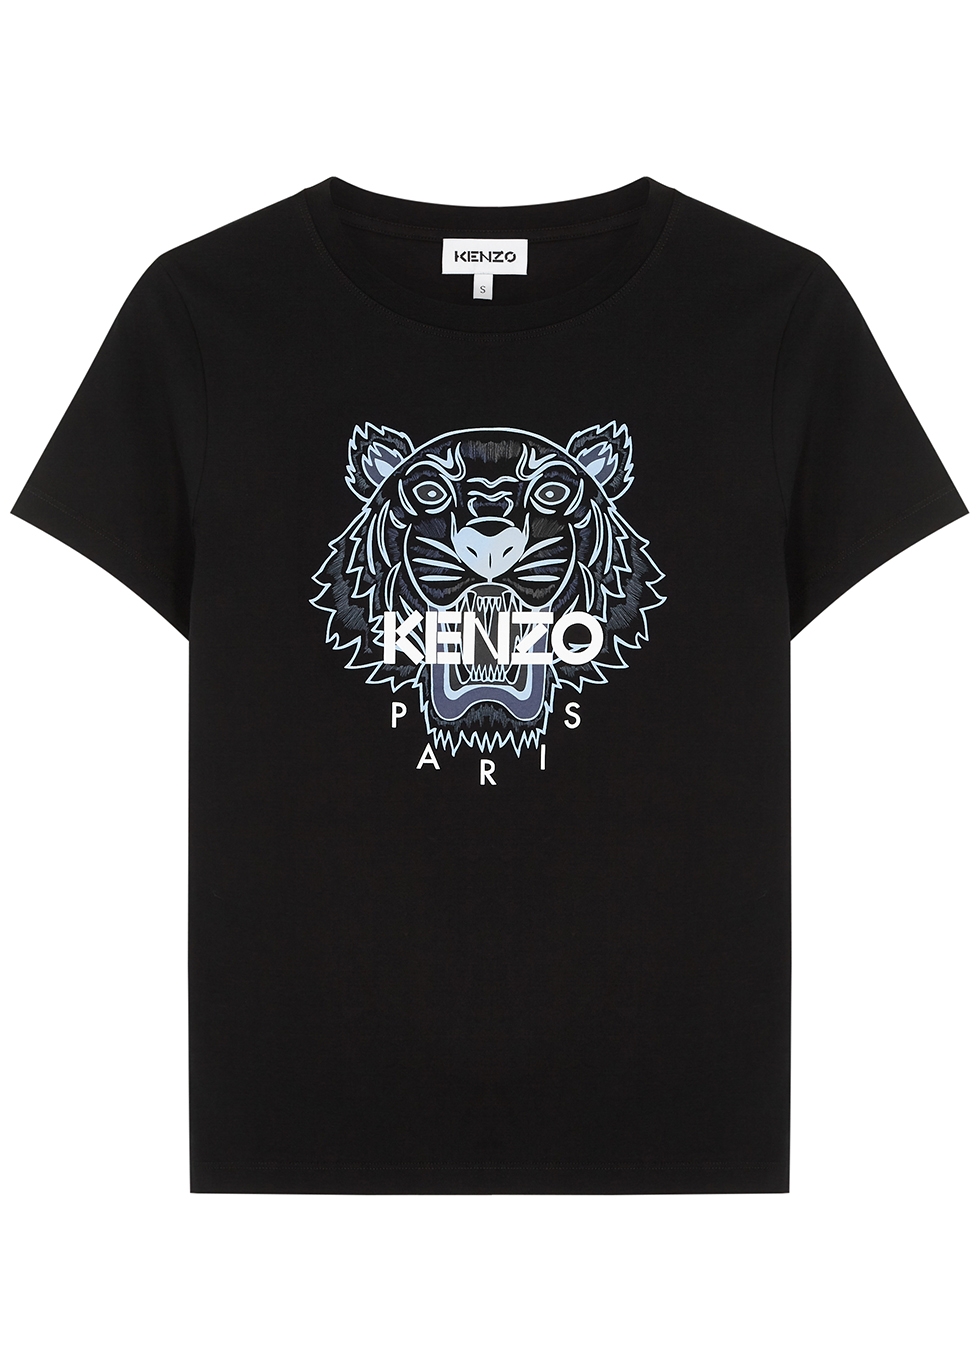 kenzo t shirt new season